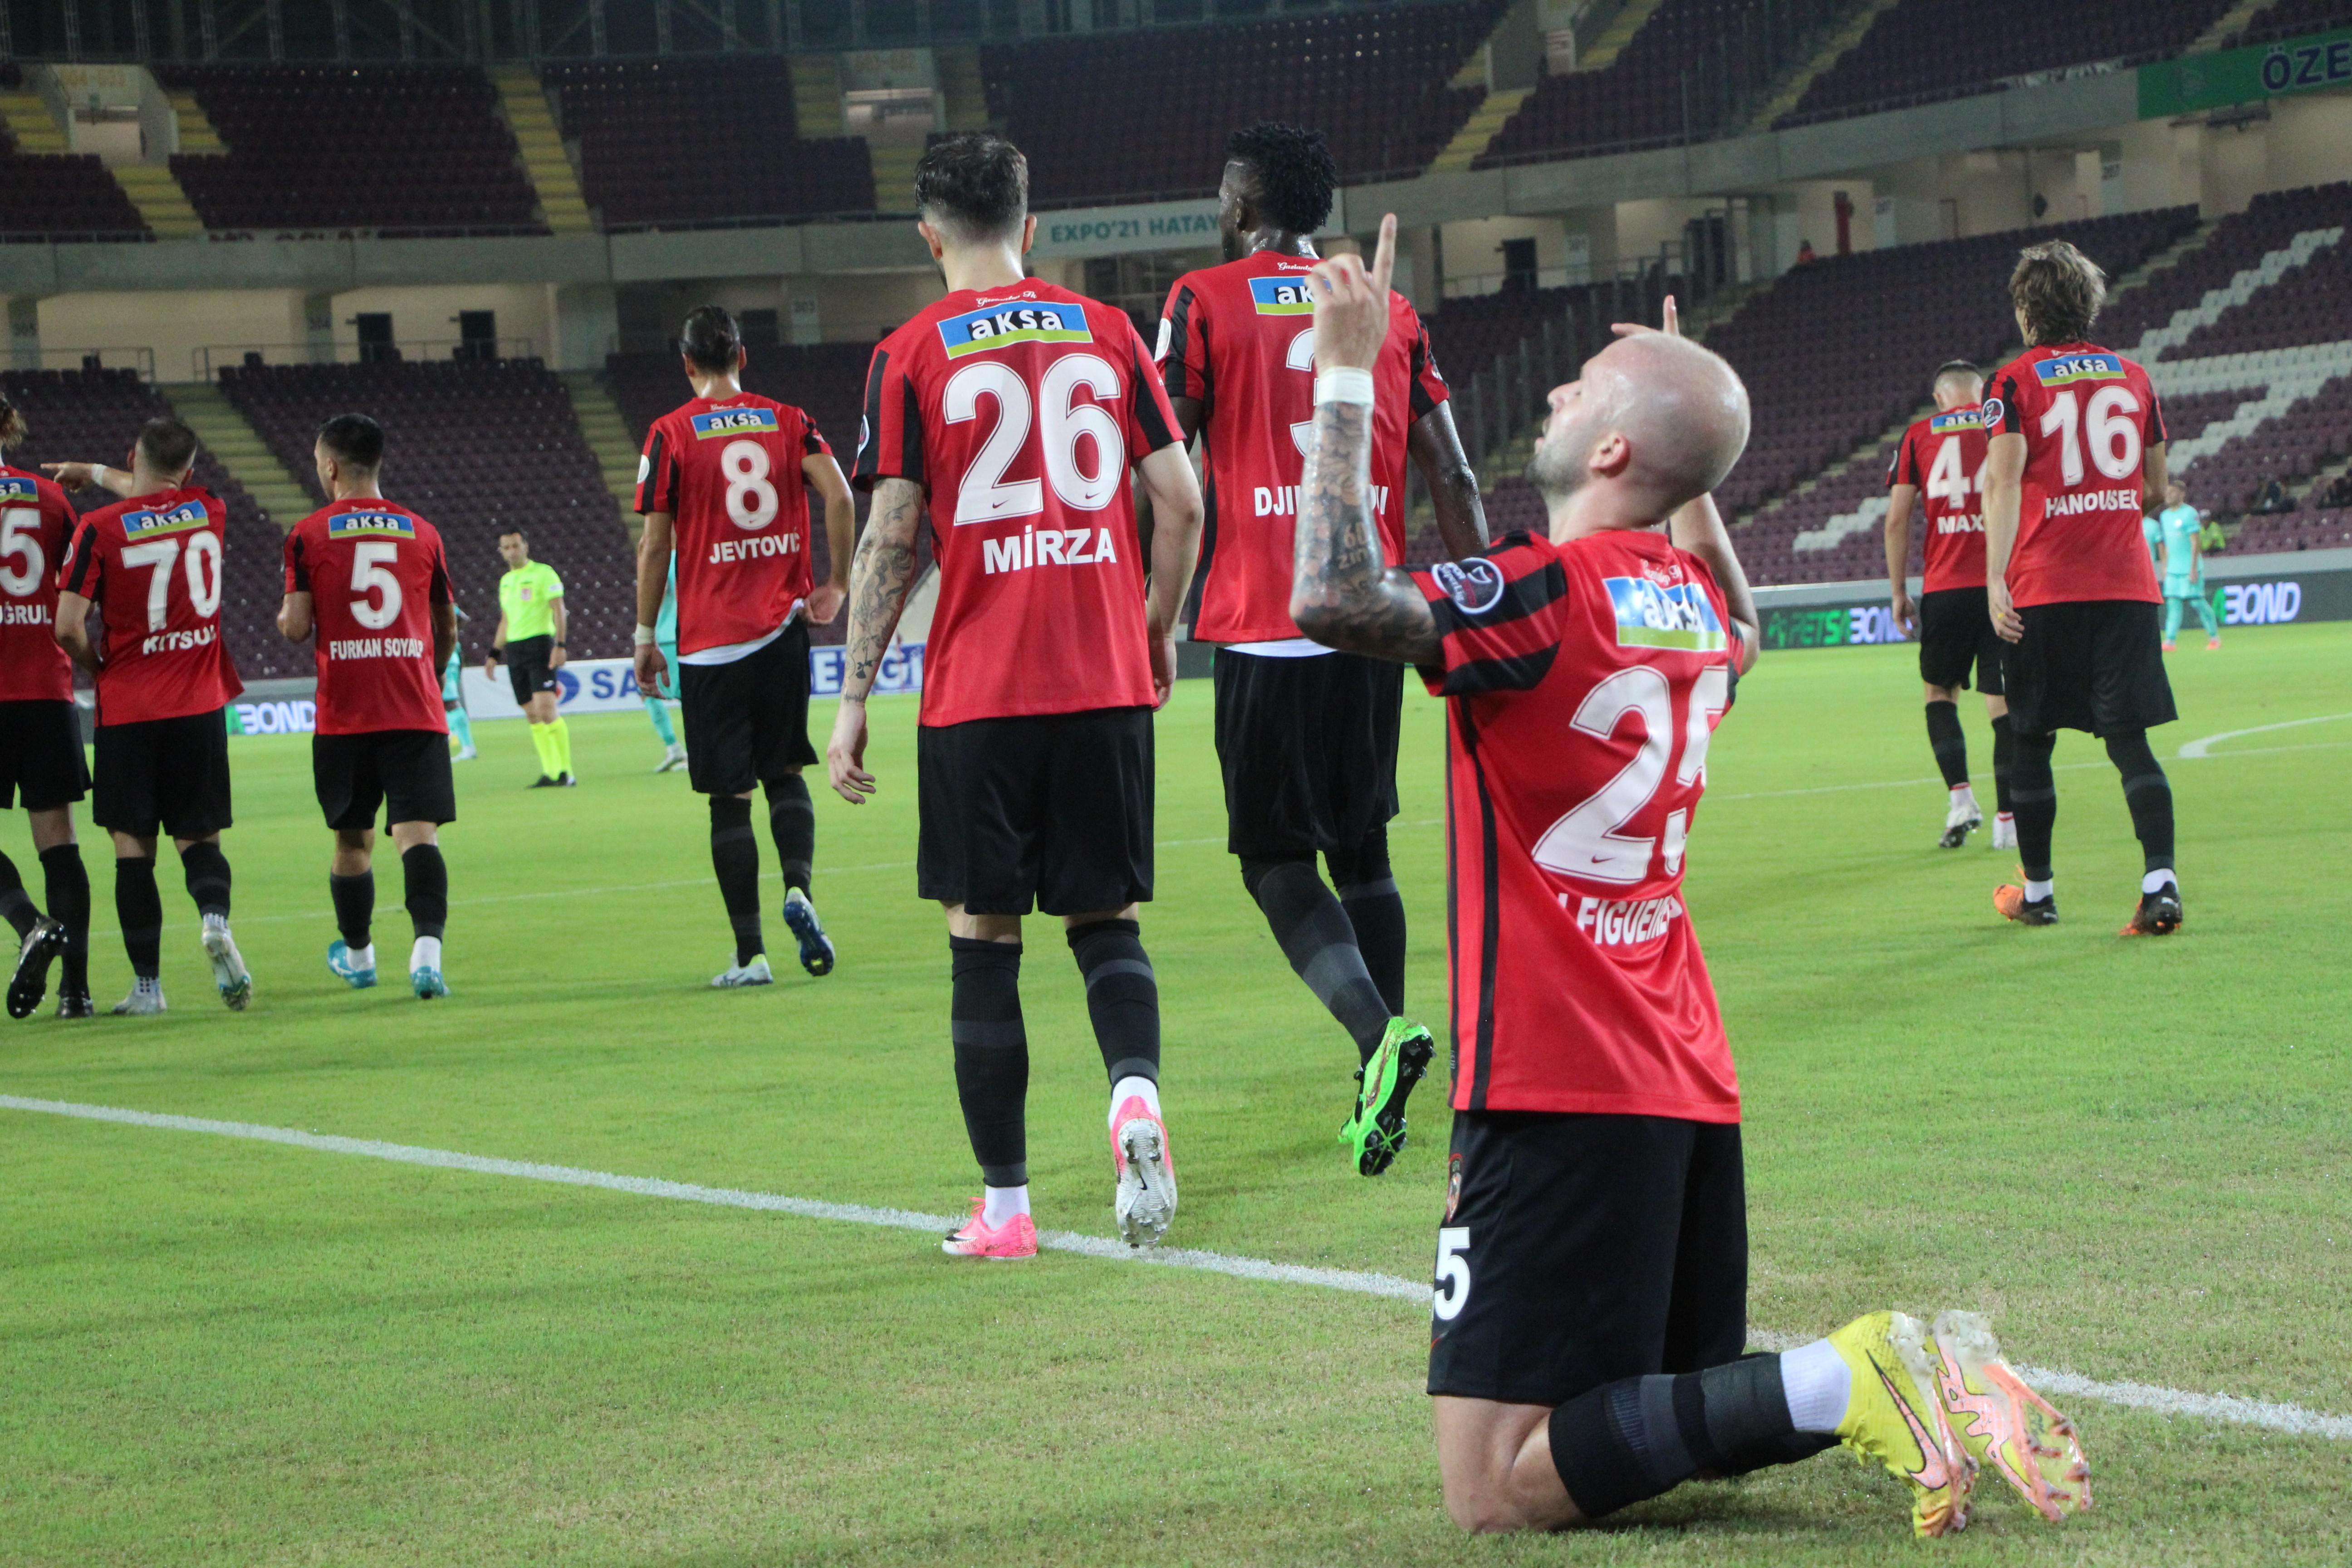 (ÖZET) Gaziantep FK - Antalyaspor maç sonucu: 5-2